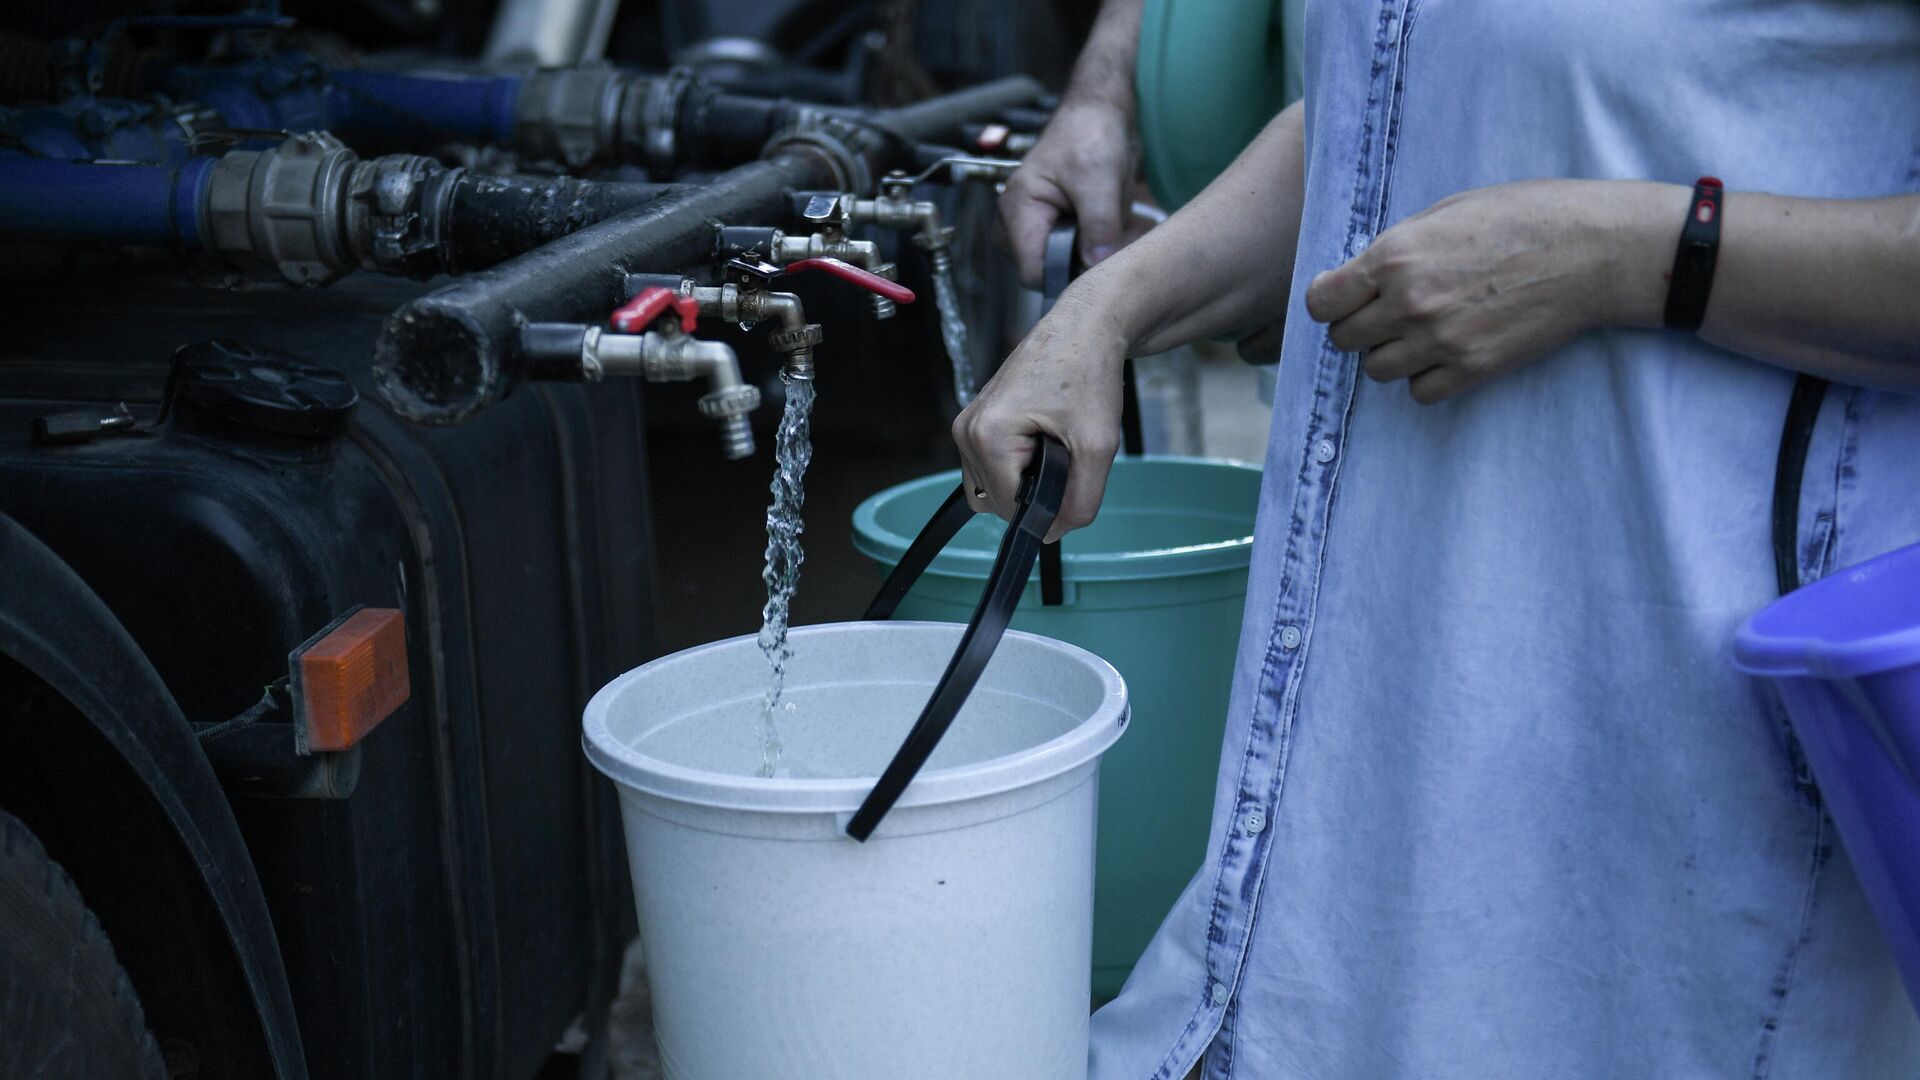 Жители Cимферополя набирают в емкости питьевую воду, привезенную в цистернах - РИА Новости, 1920, 11.09.2020